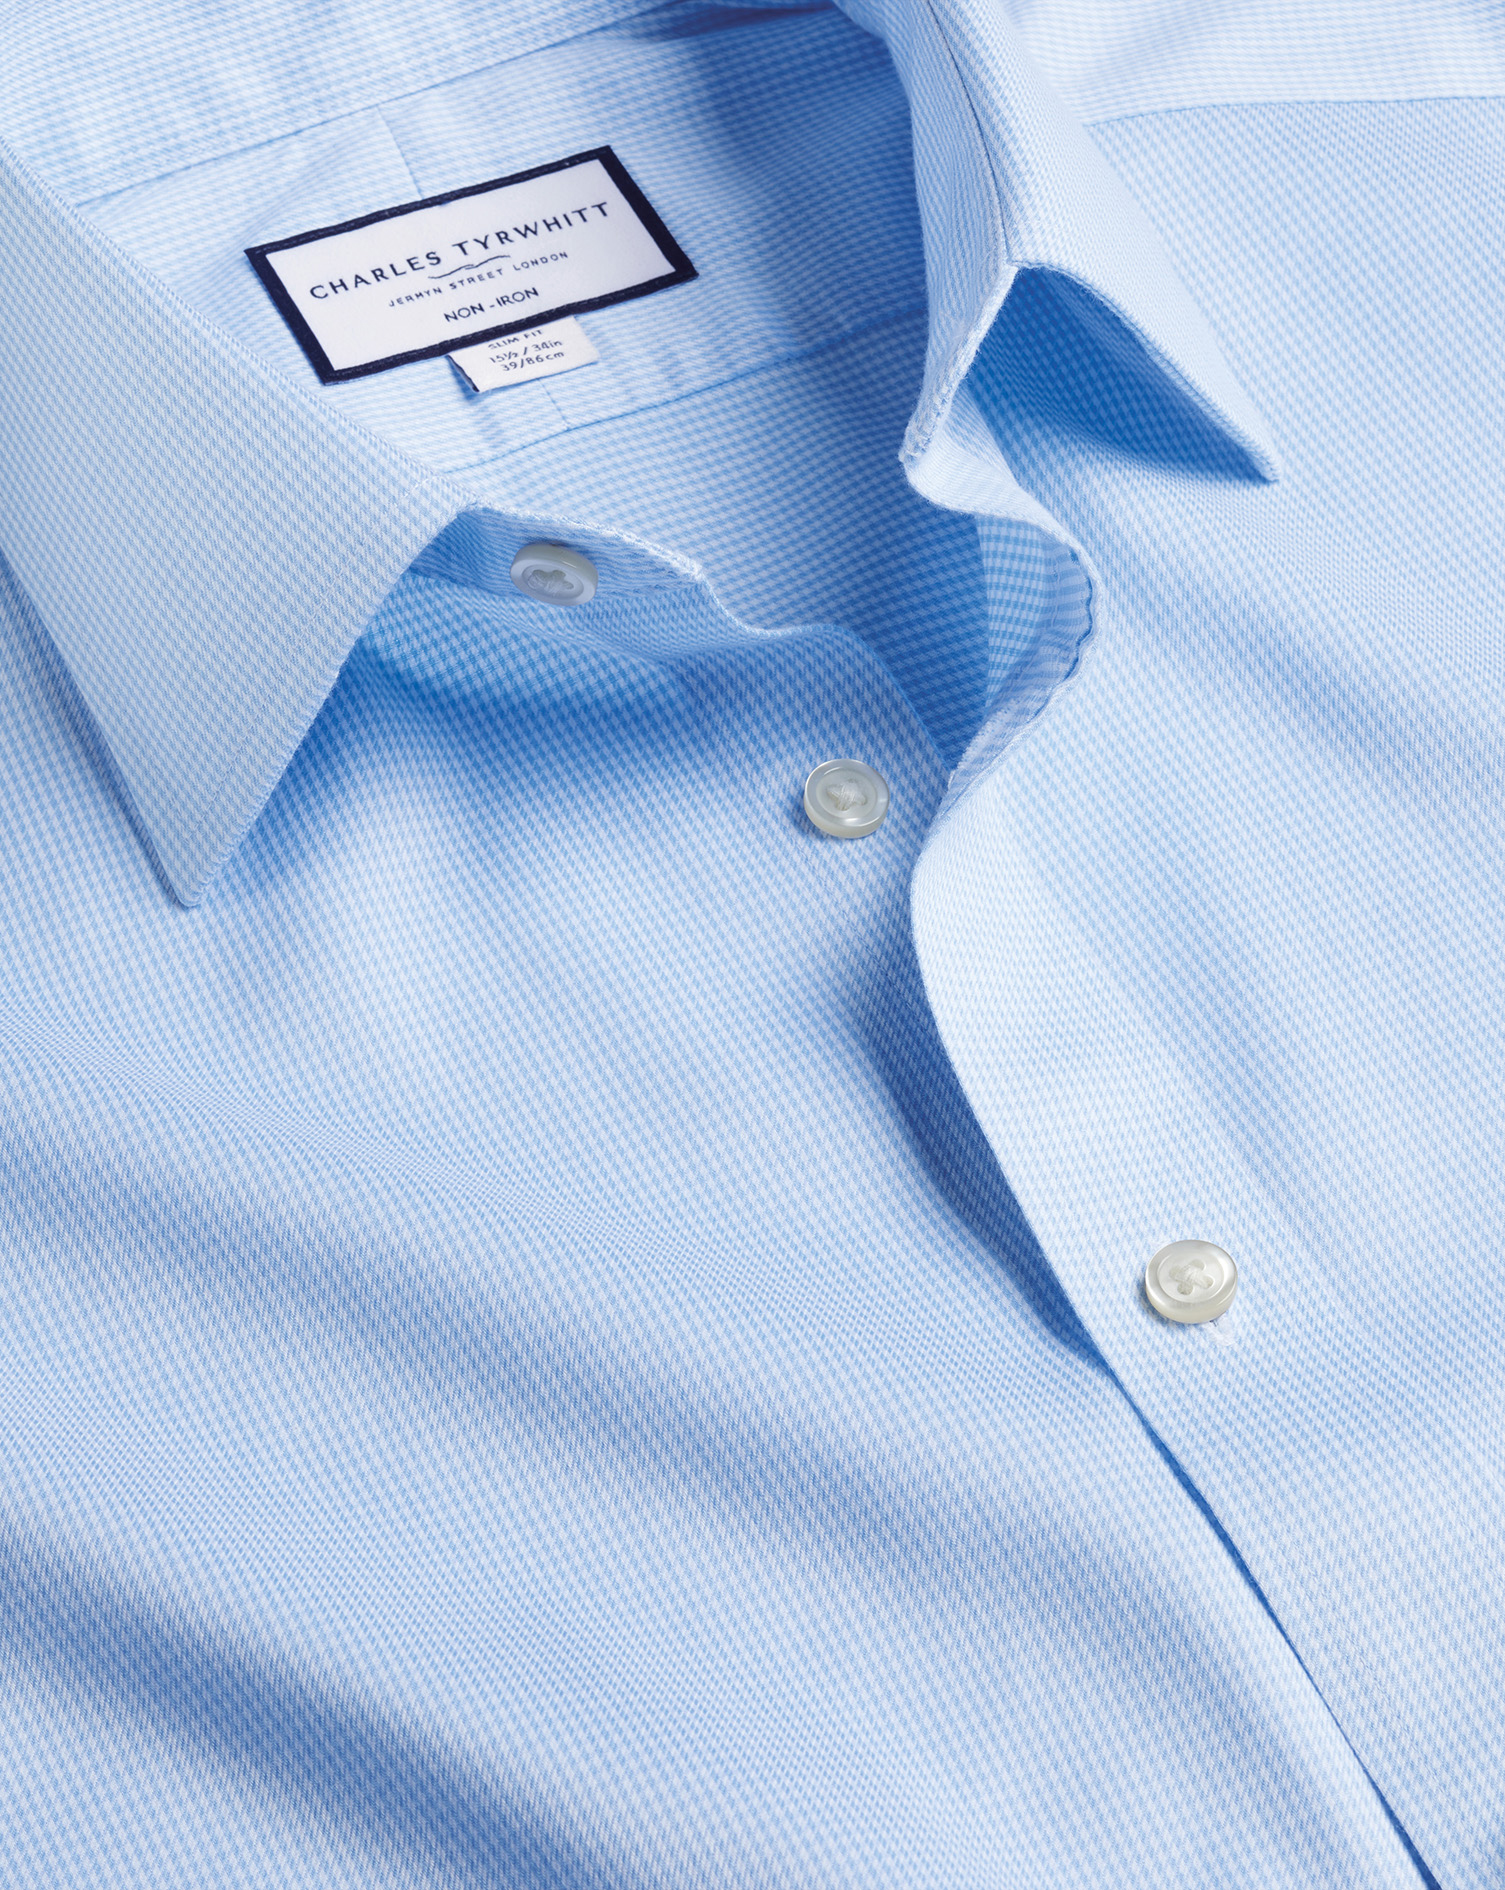 Men's Charles Tyrwhitt Non-Iron Puppytooth Dress Shirt - Sky Blue Single Cuff Size XXXL Cotton
